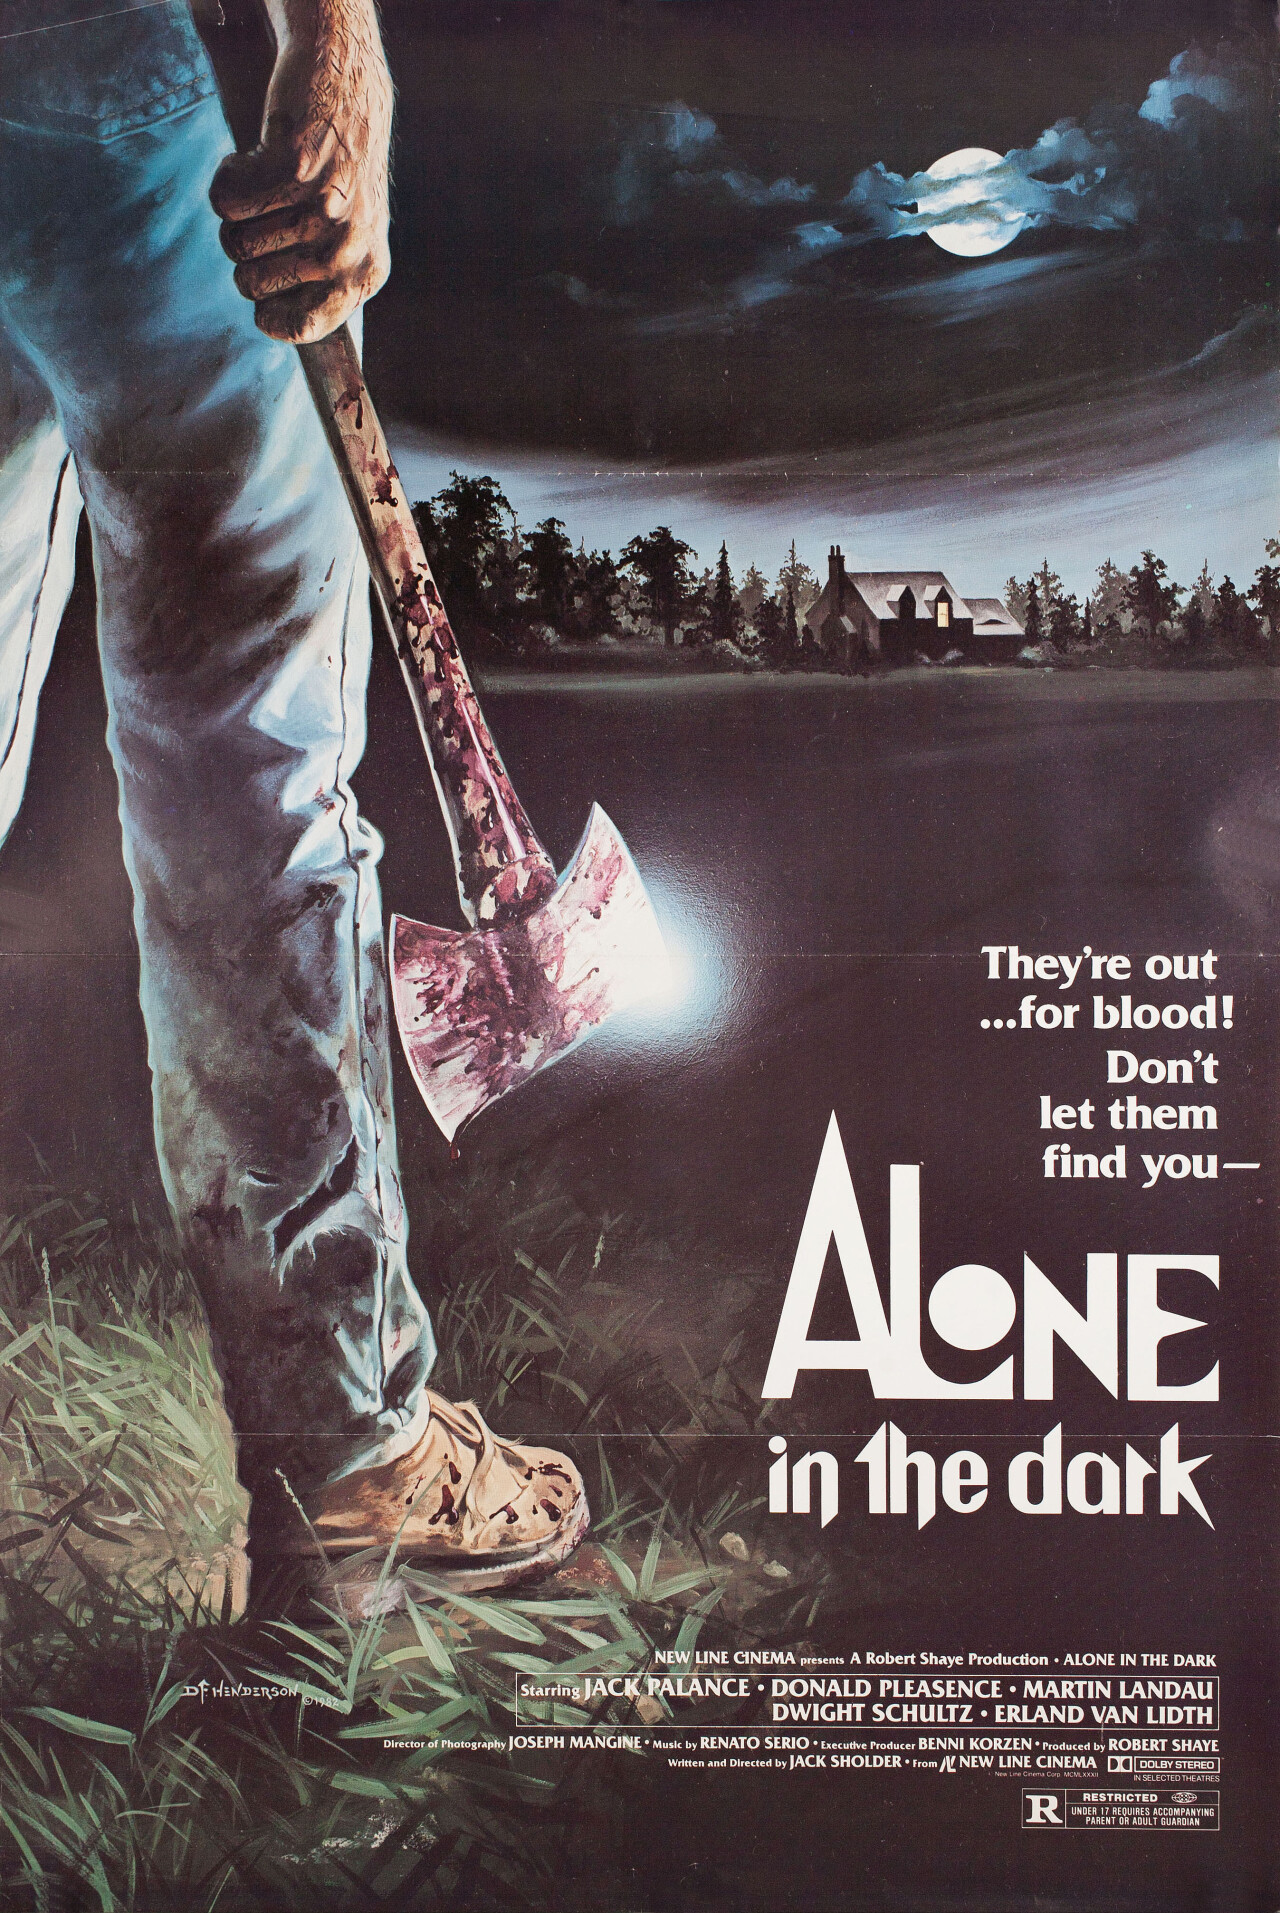 Одни во тьме (Alone in the Dark, 1982), режиссёр Джек Шолдер, американский постер к фильму, автор Дэйв Ф. Хендерсон (ужасы, 1982 год)